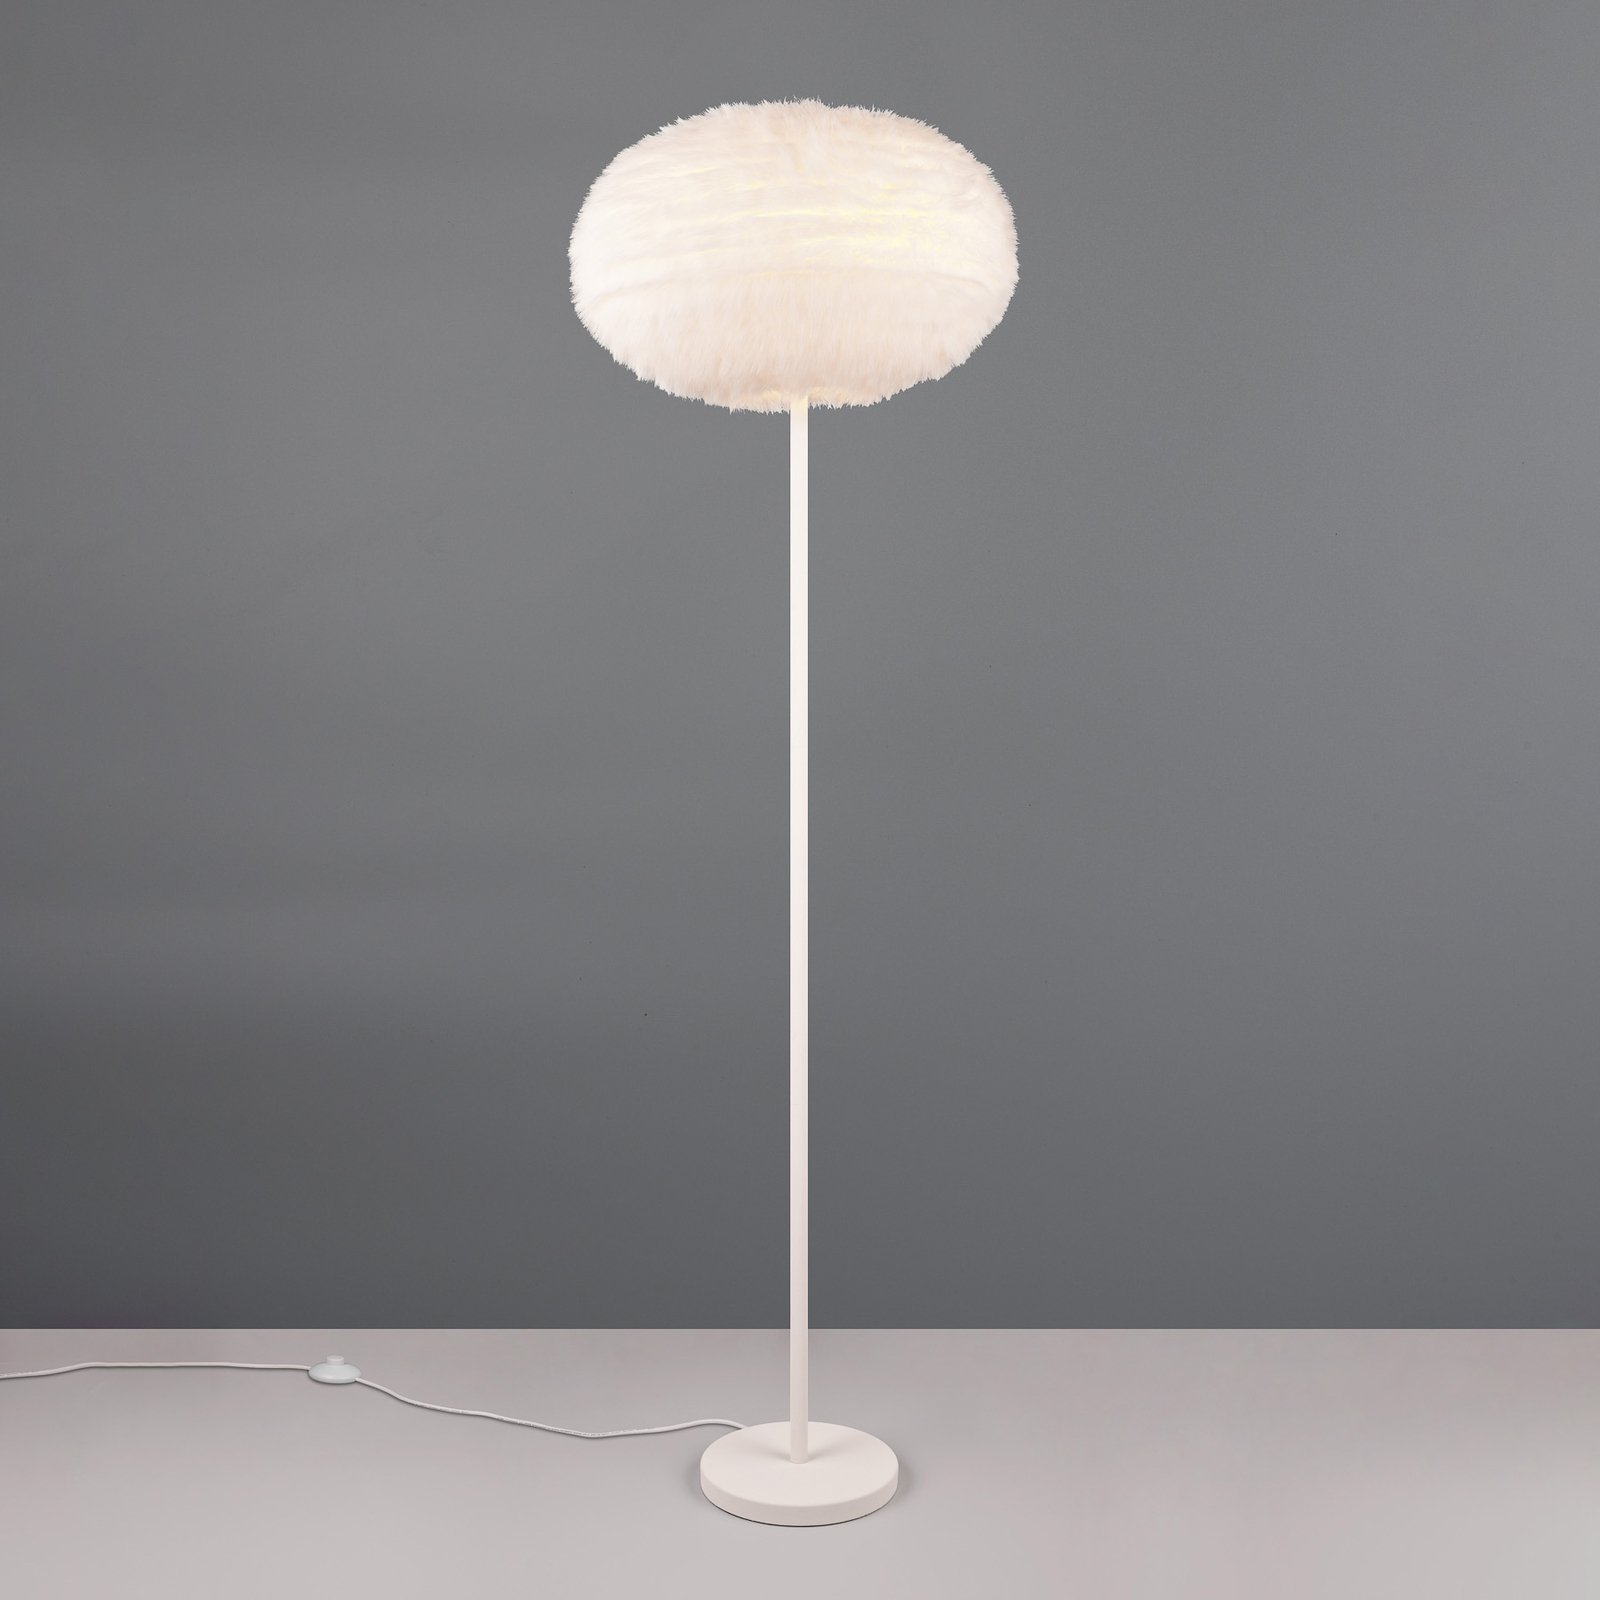 Golvlampa med päls, höjd 154 cm, sandfärgad, syntetisk plysch